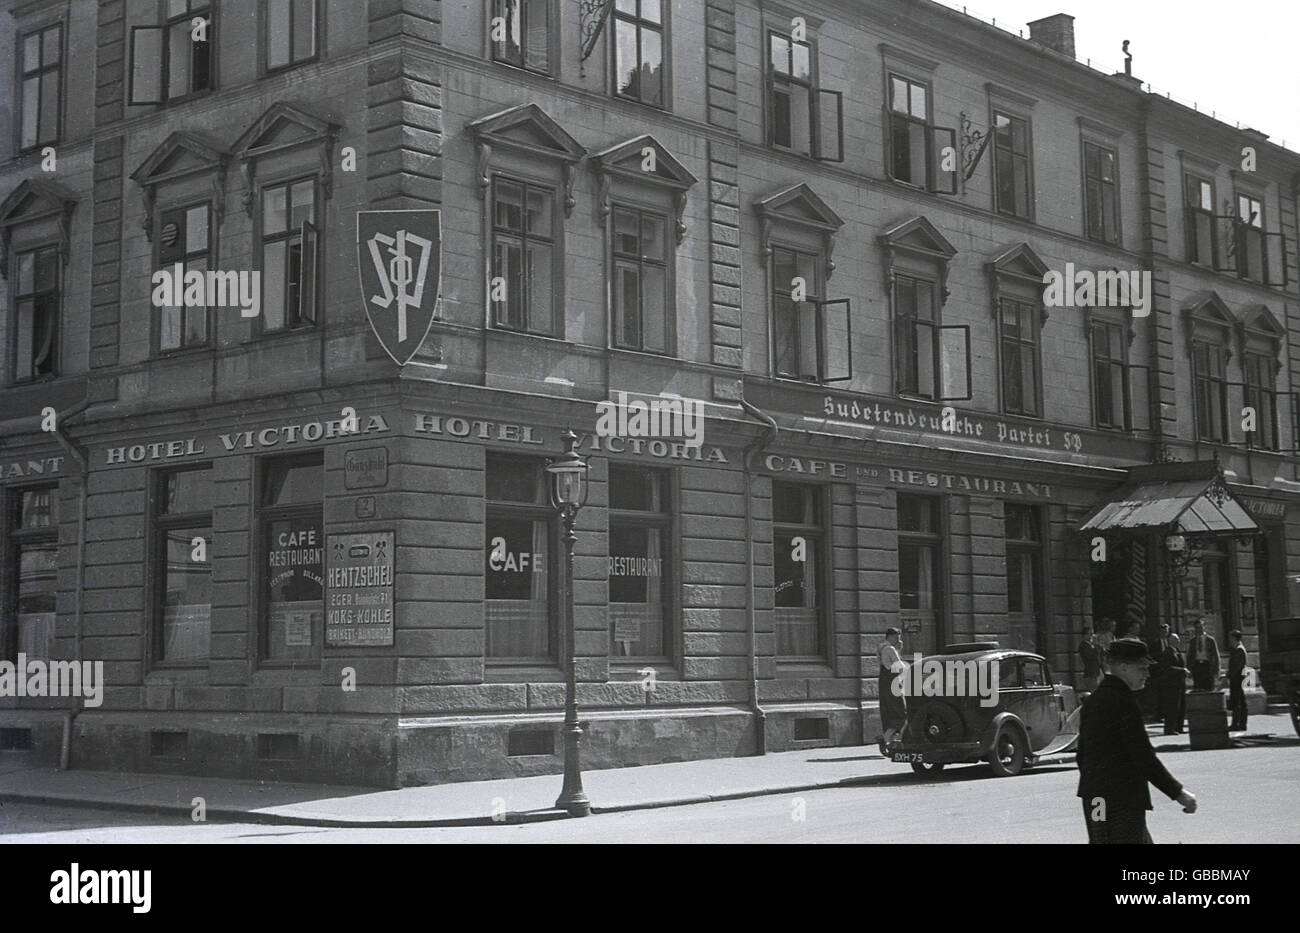 Années 1930, historique photo montre le siège de l'allemand des Sudètes (SDP) au-dessus de l'hôtel Victoria à Cheb (Eger) dans les Sudètes, en Tchécoslovaquie entre-deux-guerres. Une voiture avec un numéro de la plaque est garé juste devant. Banque D'Images